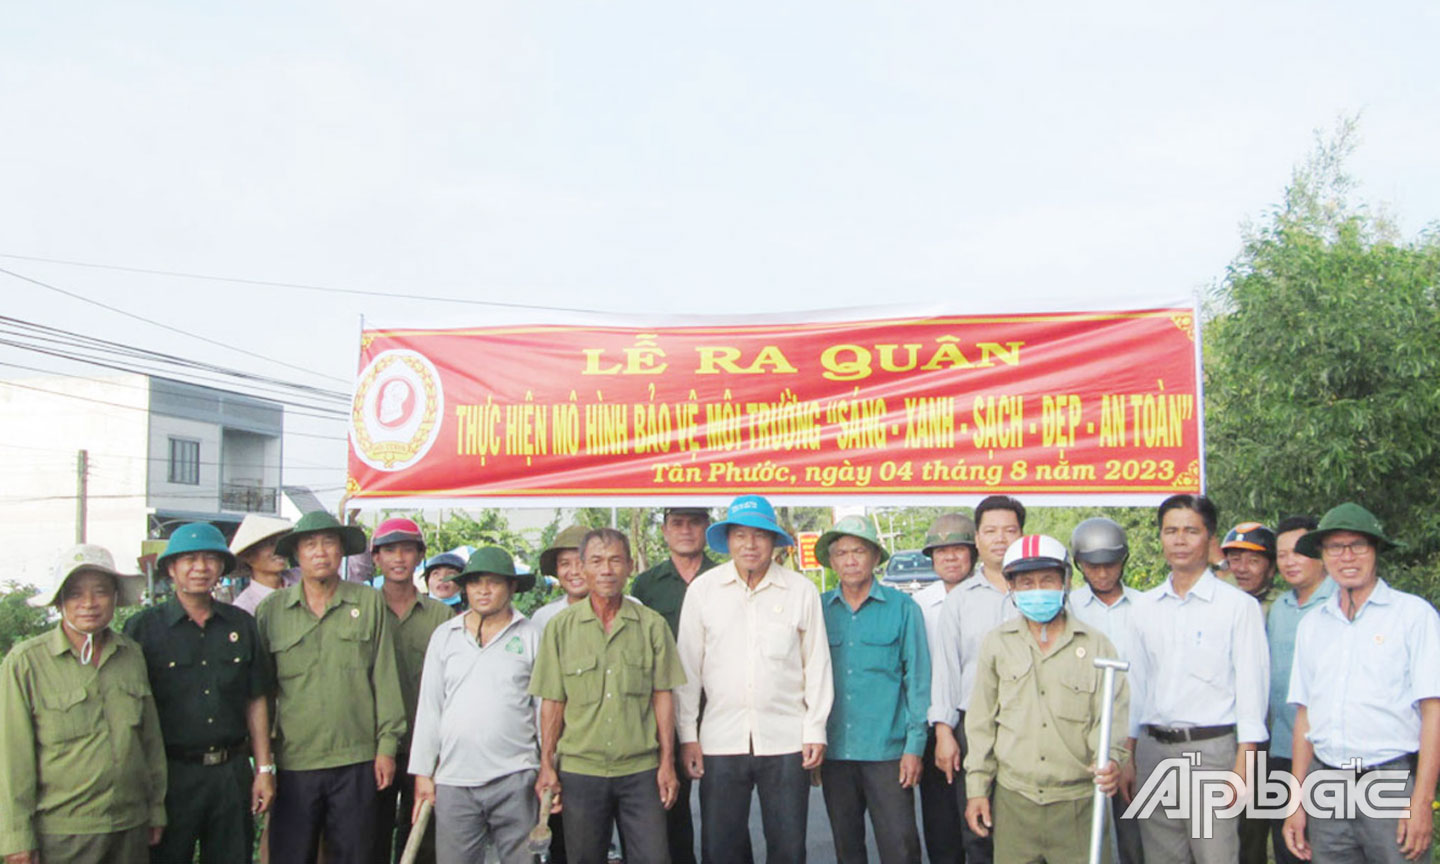 Cựu chiến binh huyện Tân Phước: Chung tay xây dựng nông thôn mới